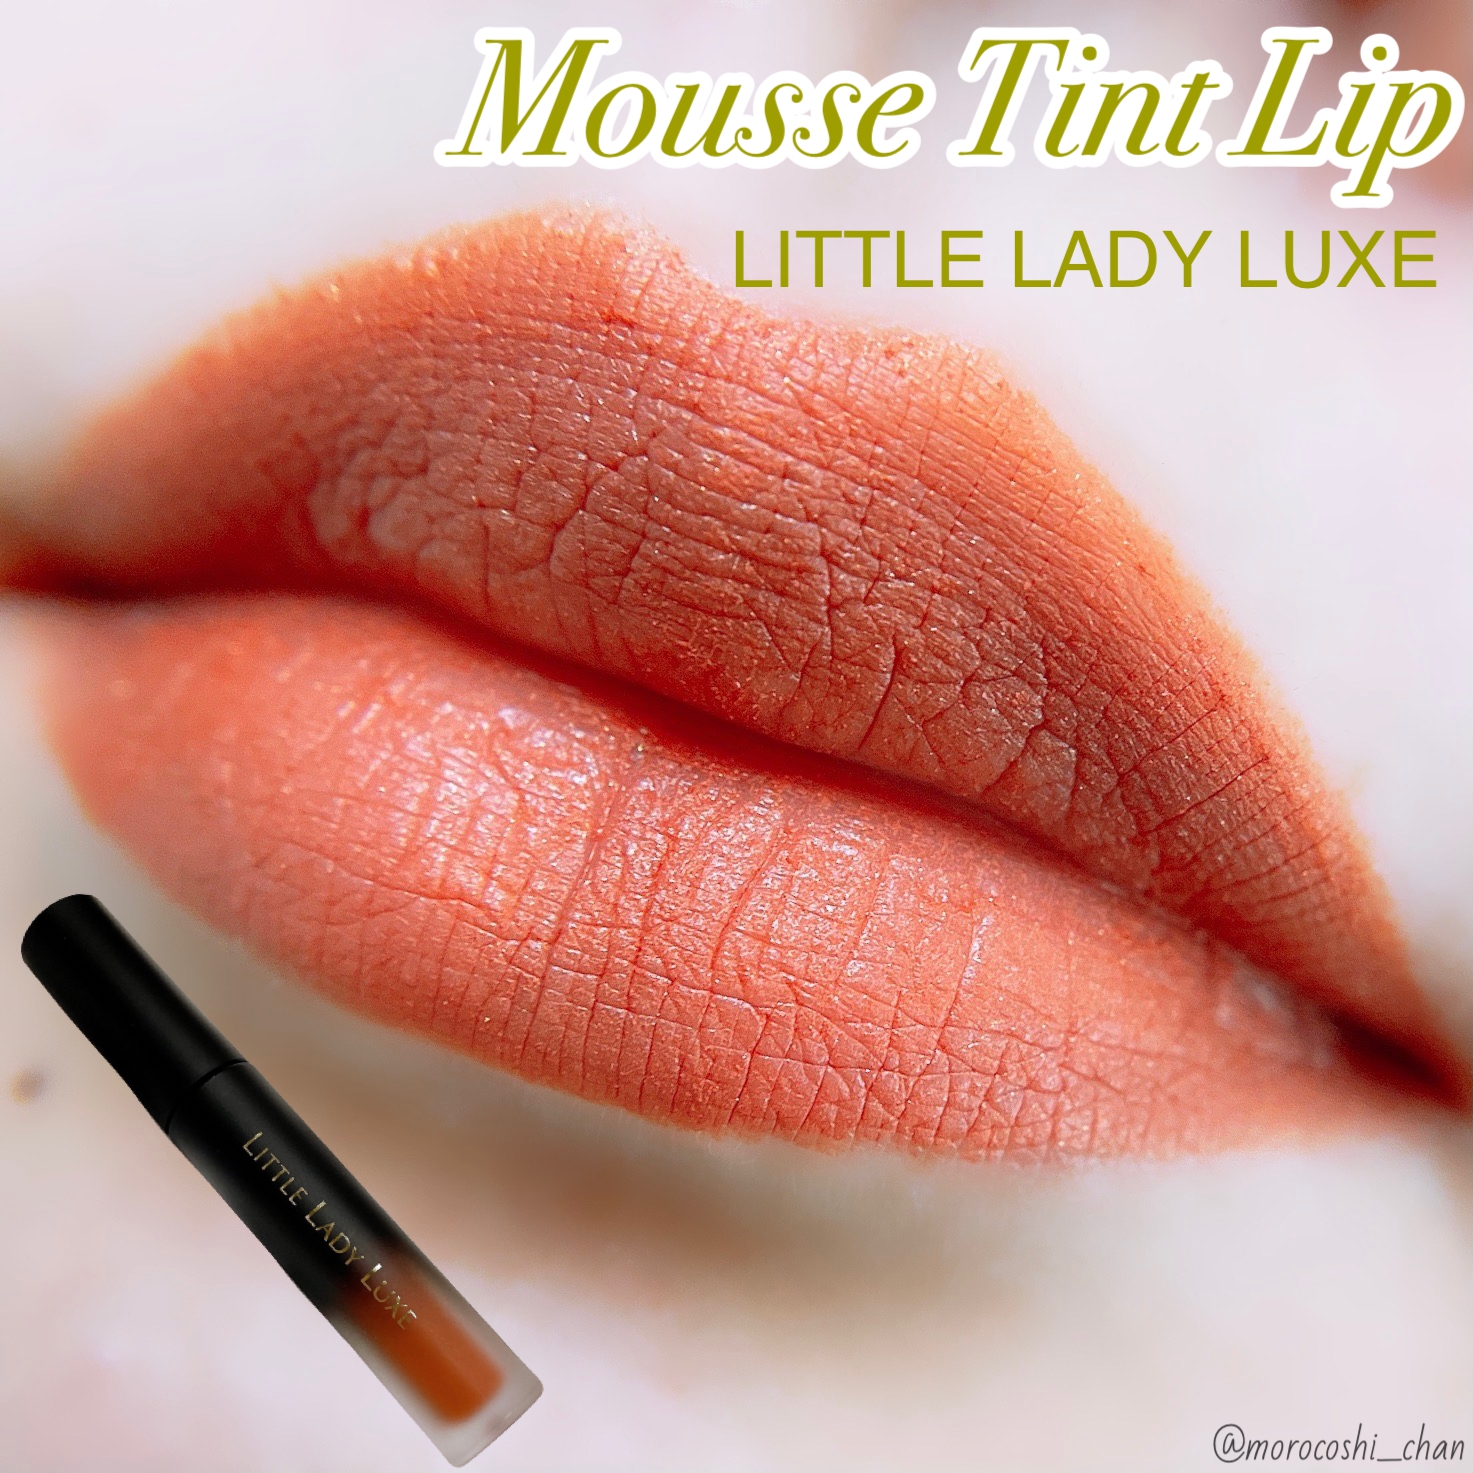 LITTLE LADY LUXE(リトルレディリュクス) ムースティントリップの良い点・メリットに関するもろこしちゃん🌽さんの口コミ画像1